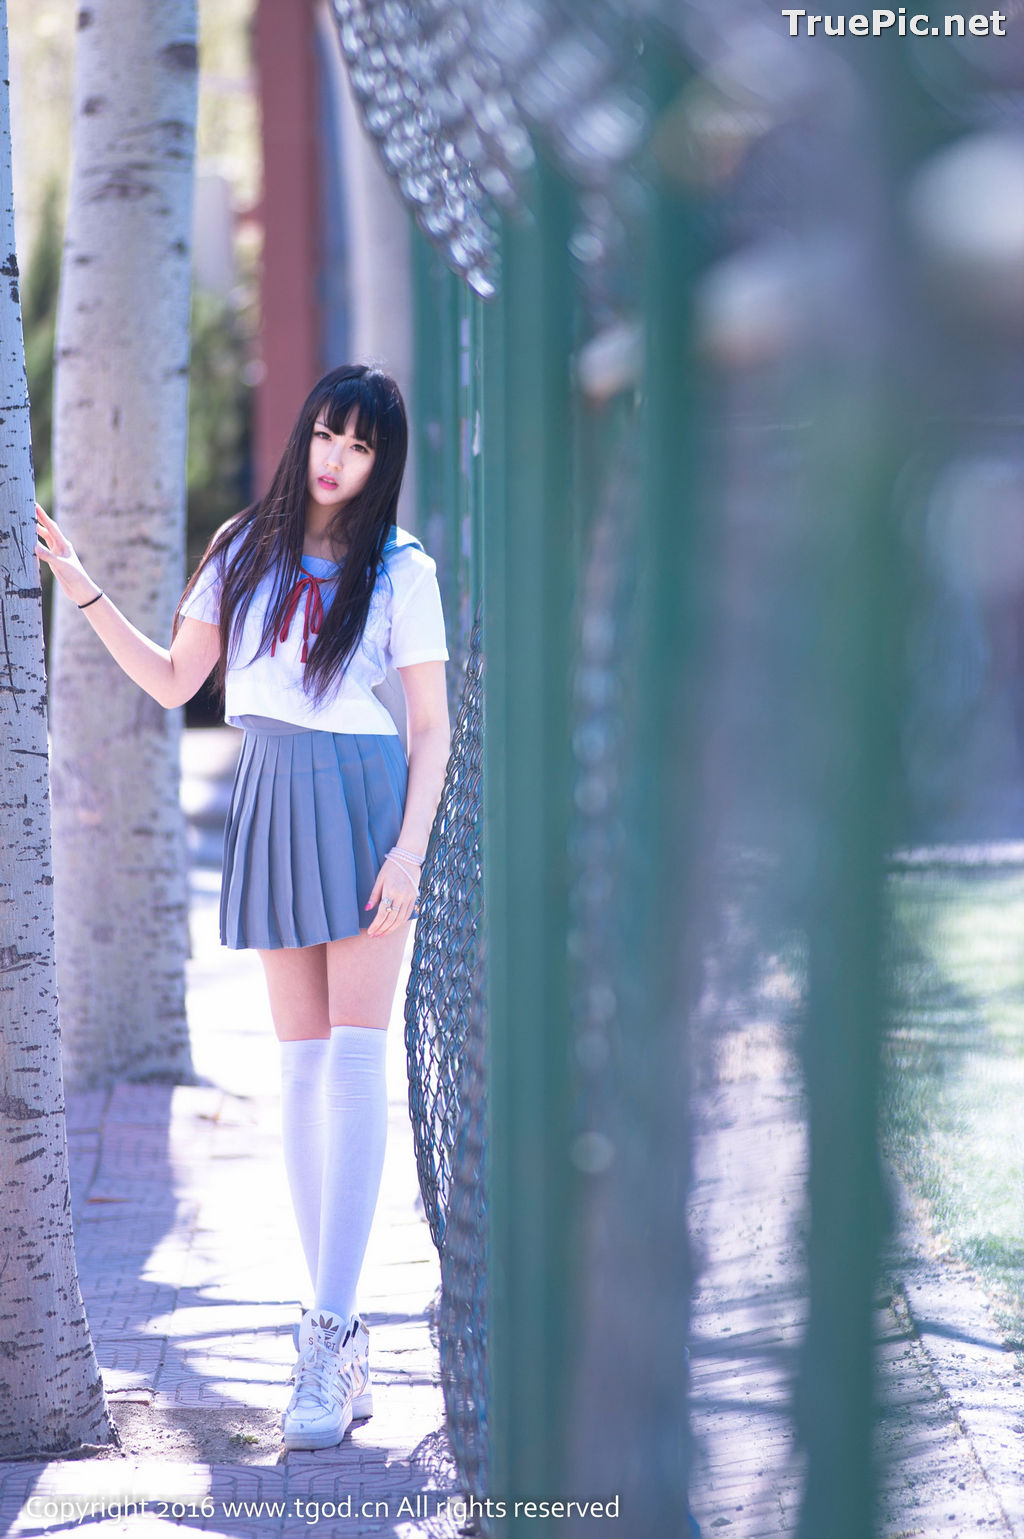 Image TGOD Photo Album – Chinese Cute Girl – Yi Yi Eva (伊伊Eva) - TruePic.net - Picture-49